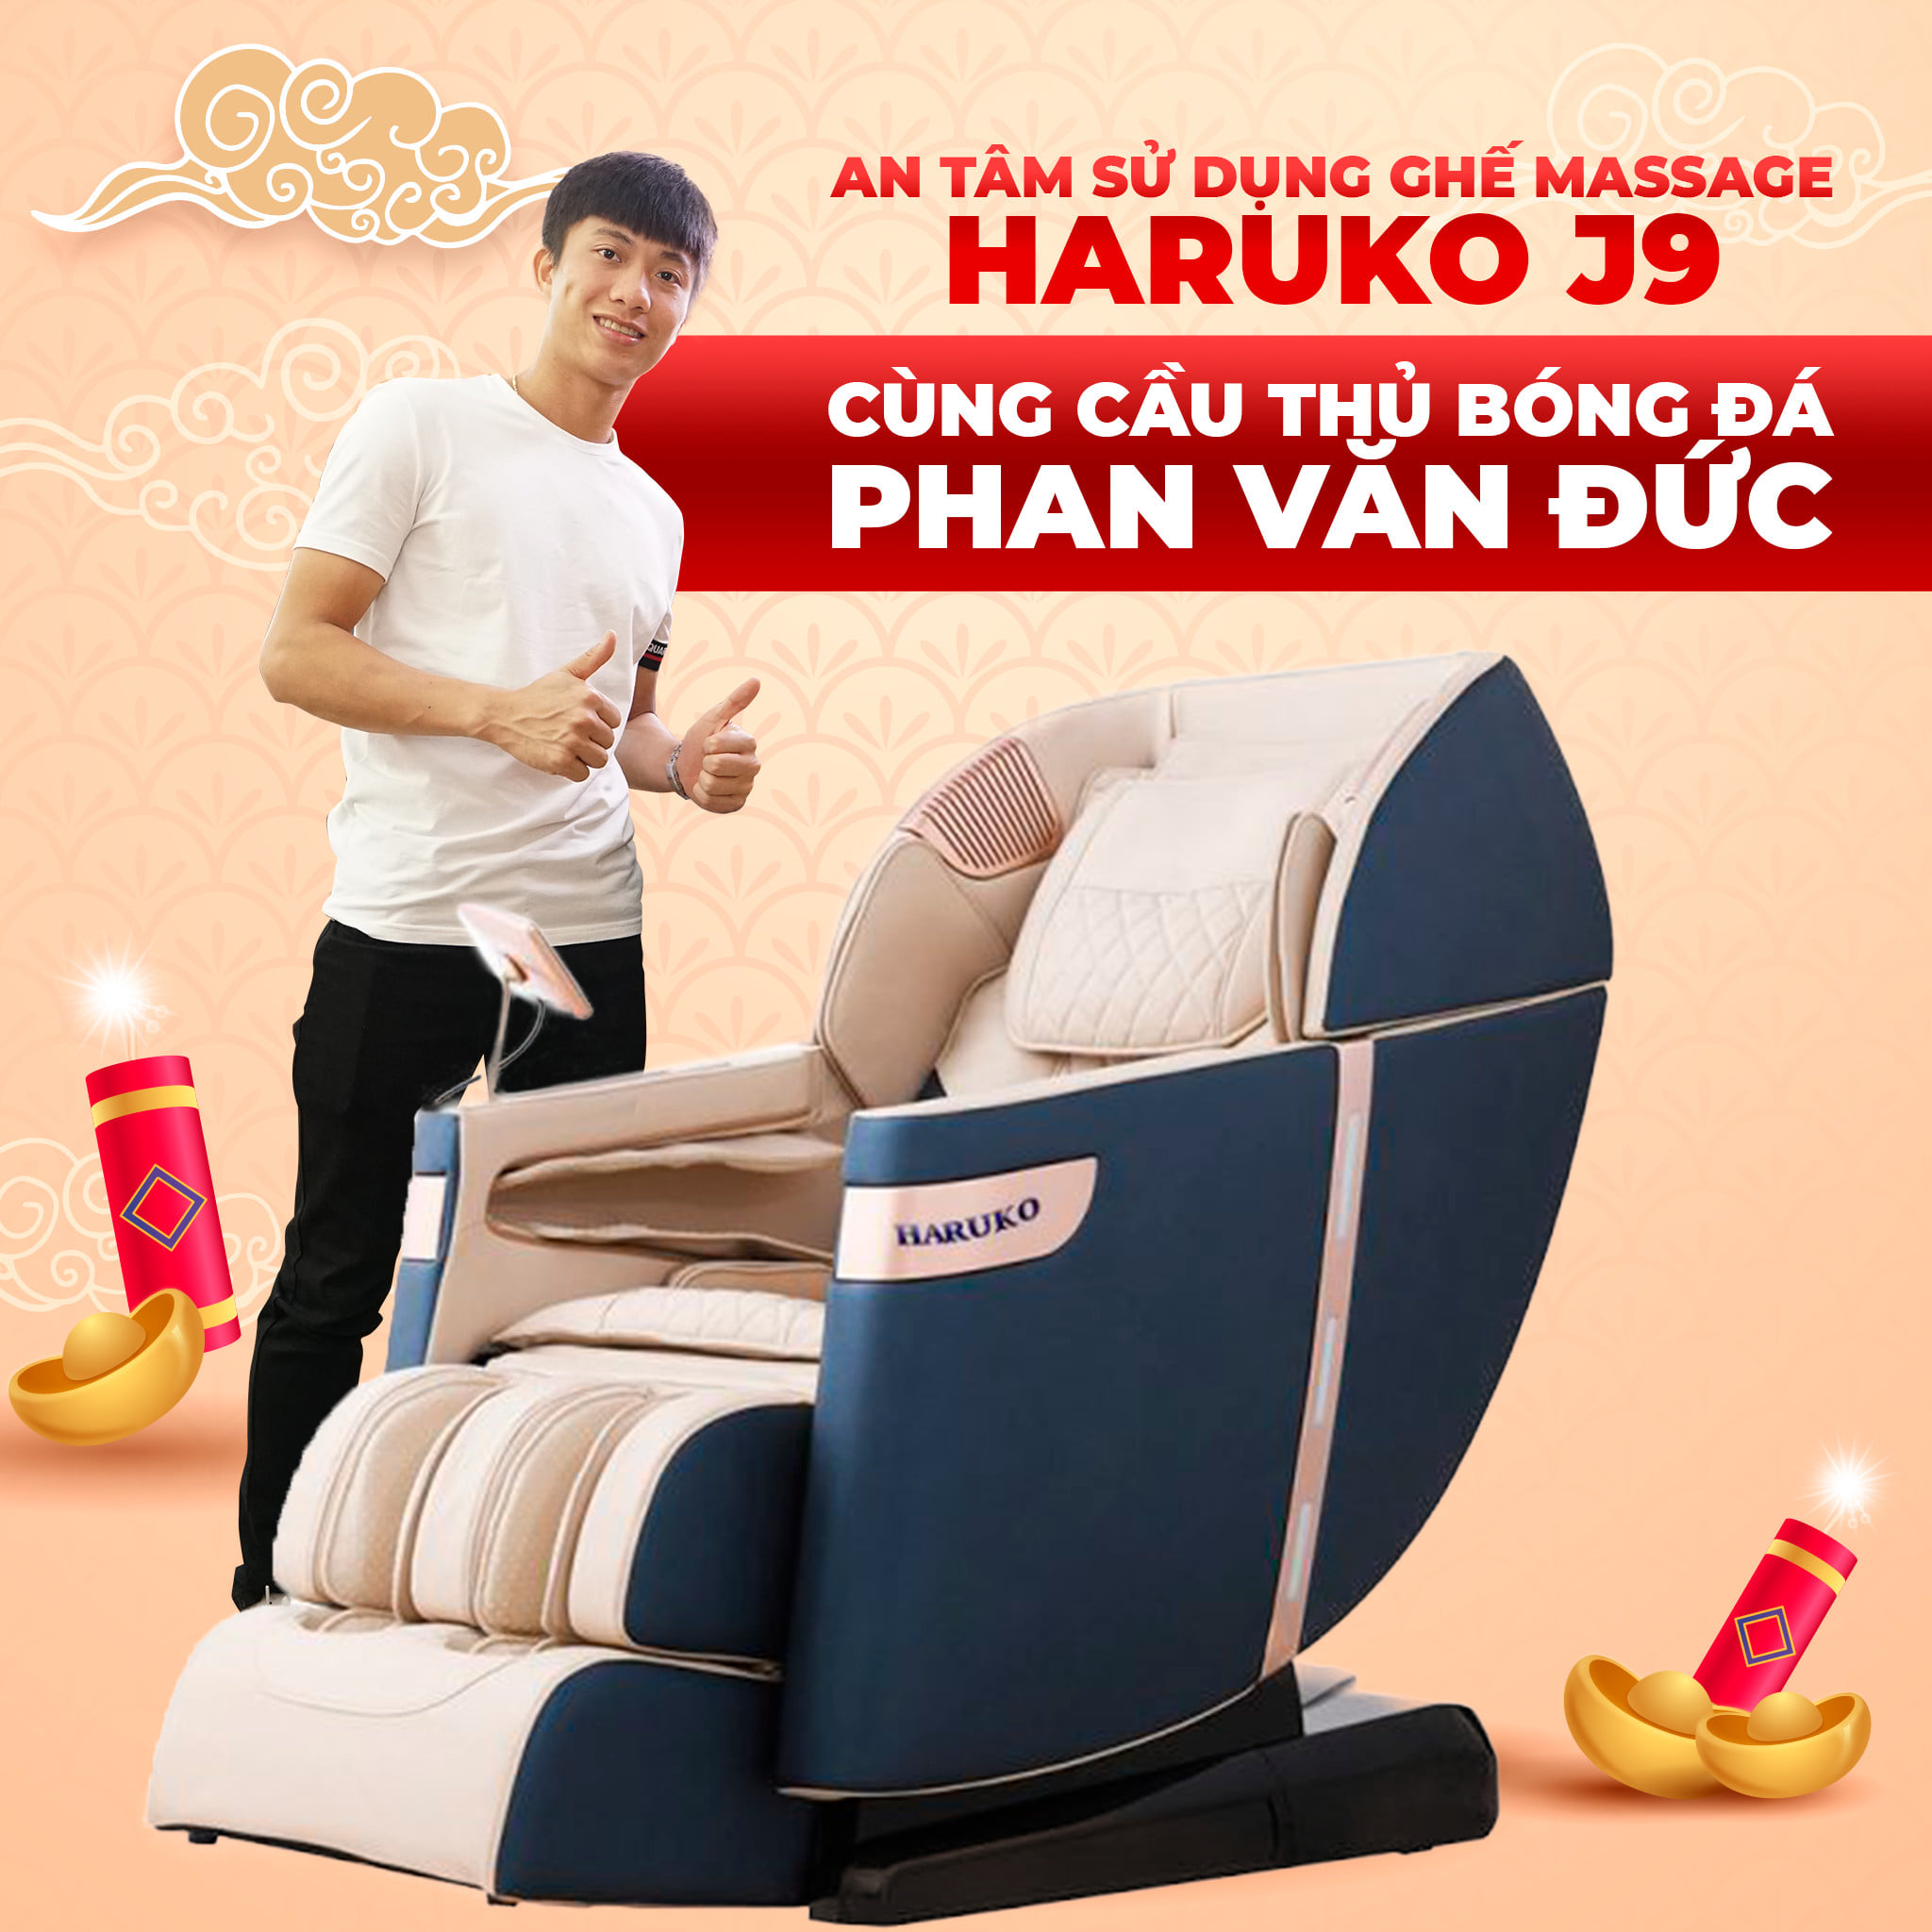 Ghế massage Haruko-J9 là mẫu sản phẩm cao cấp sở hữu nhiều chức năng đa dạng